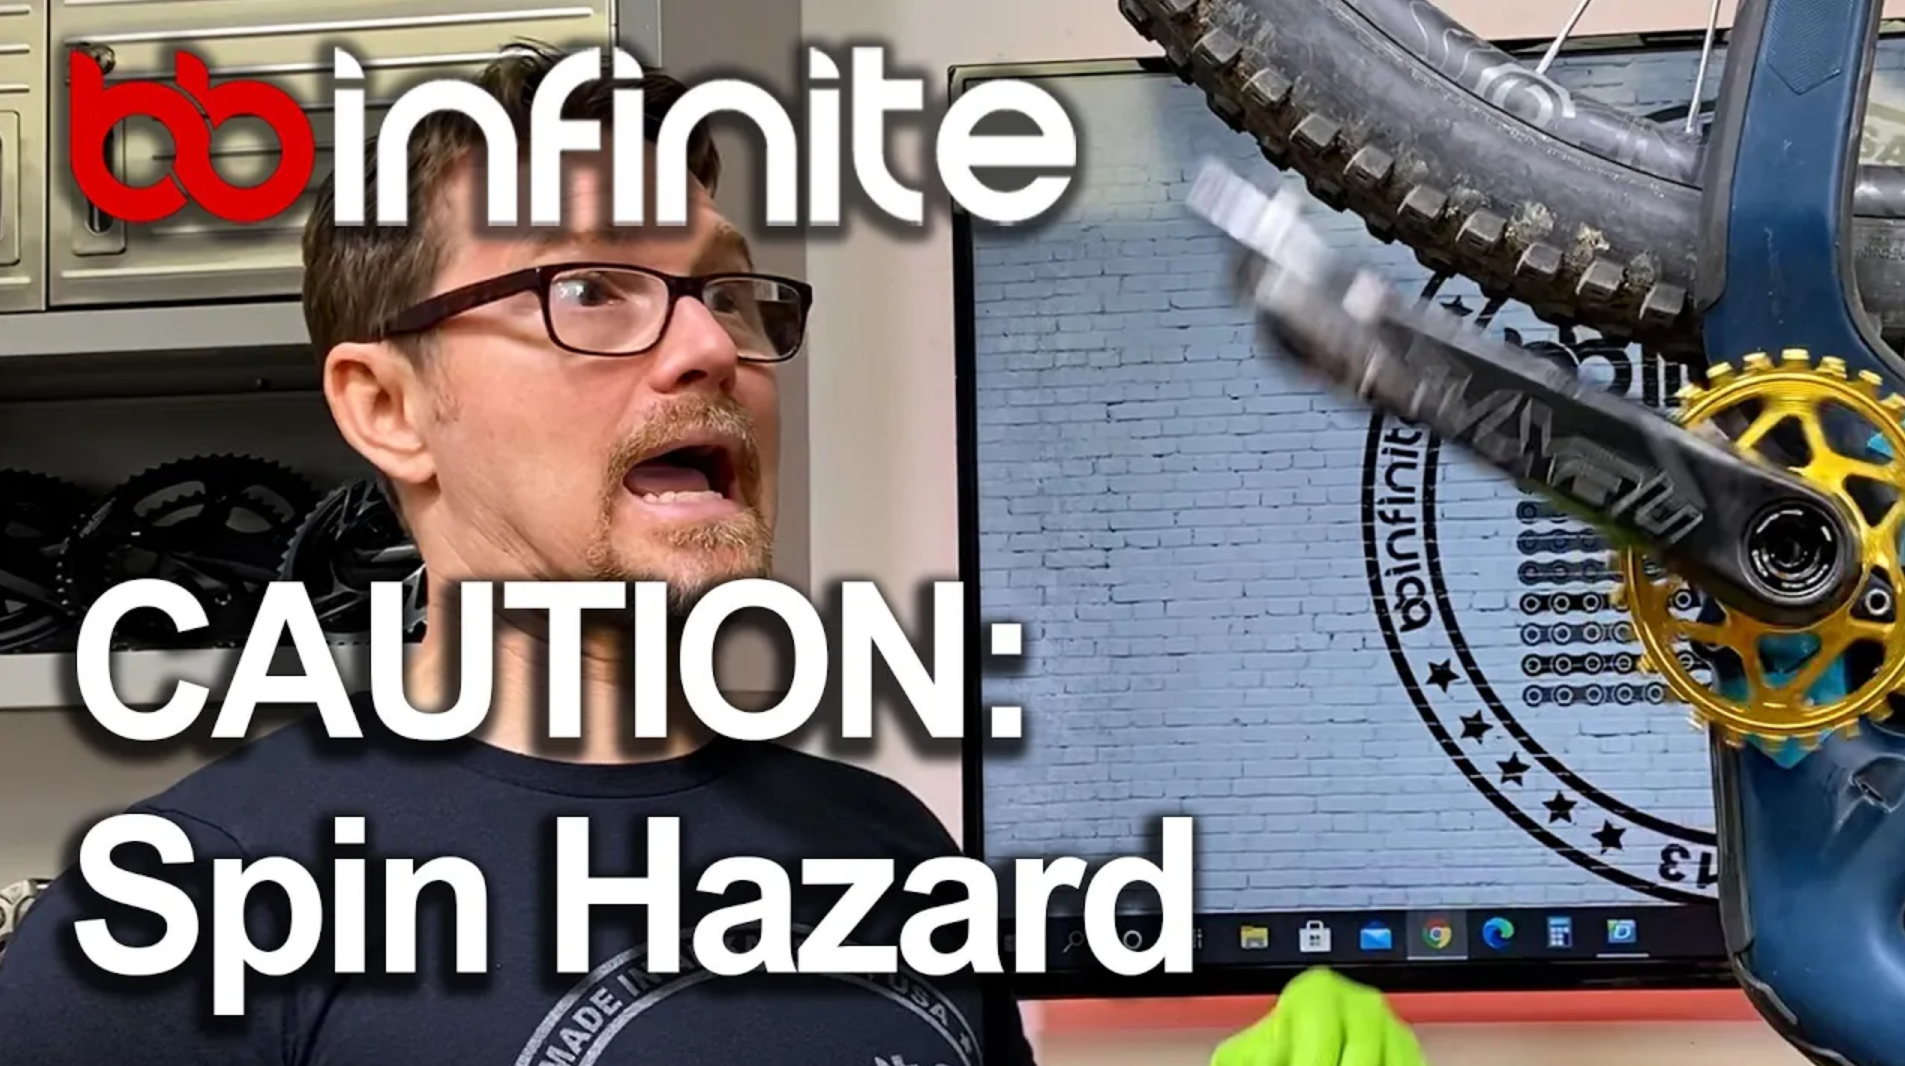 CAUTION: BBInfinite Spin Hazard